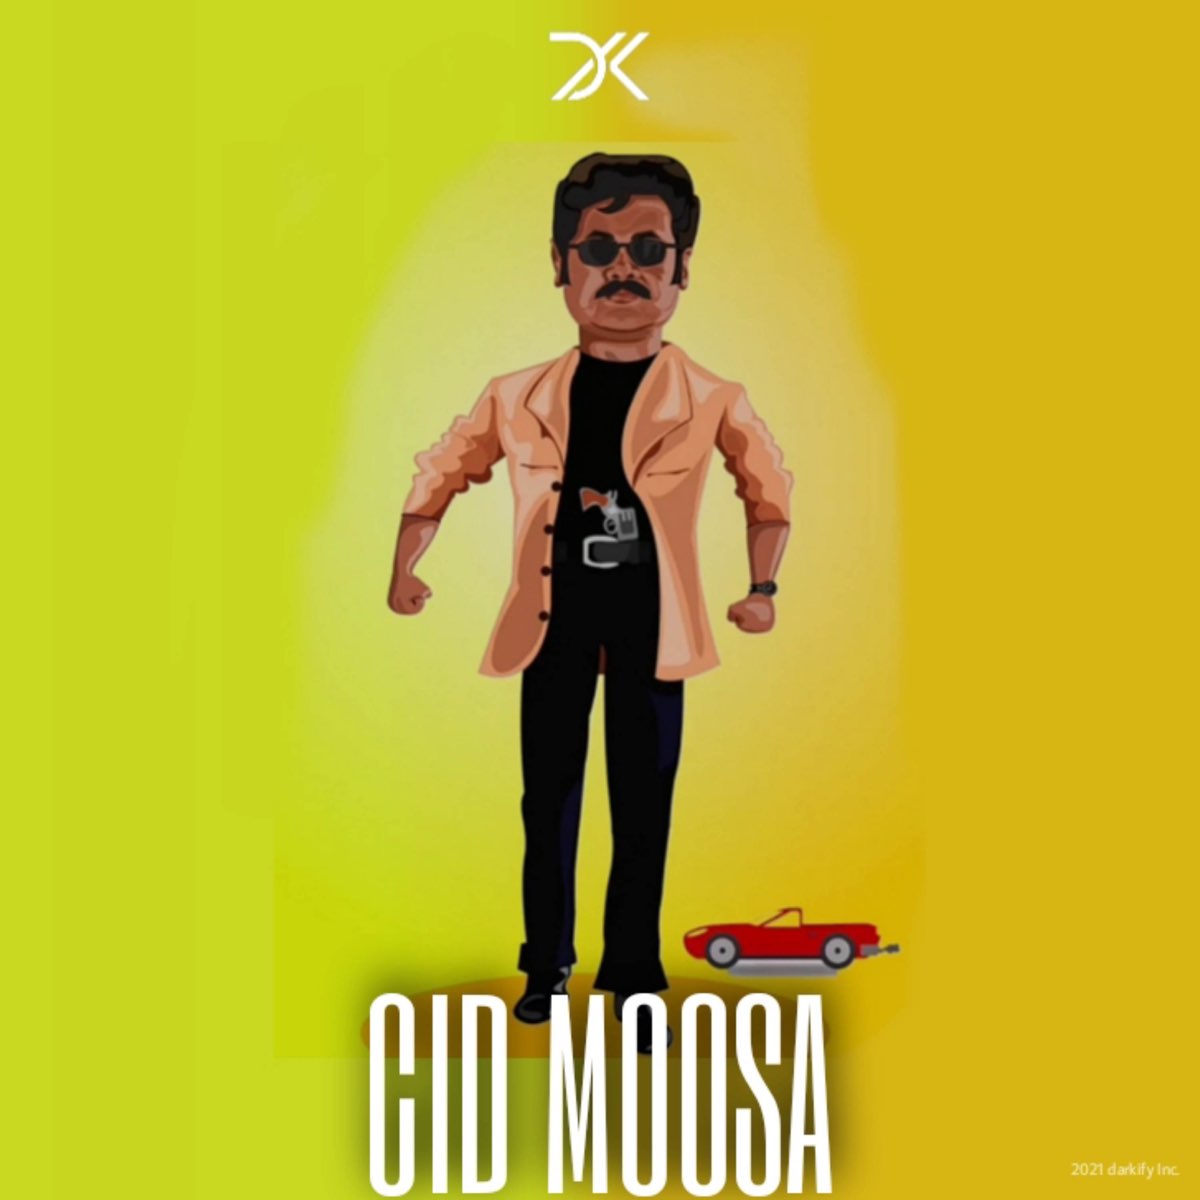 Cid Moosa - Single by Darkify on Apple Music